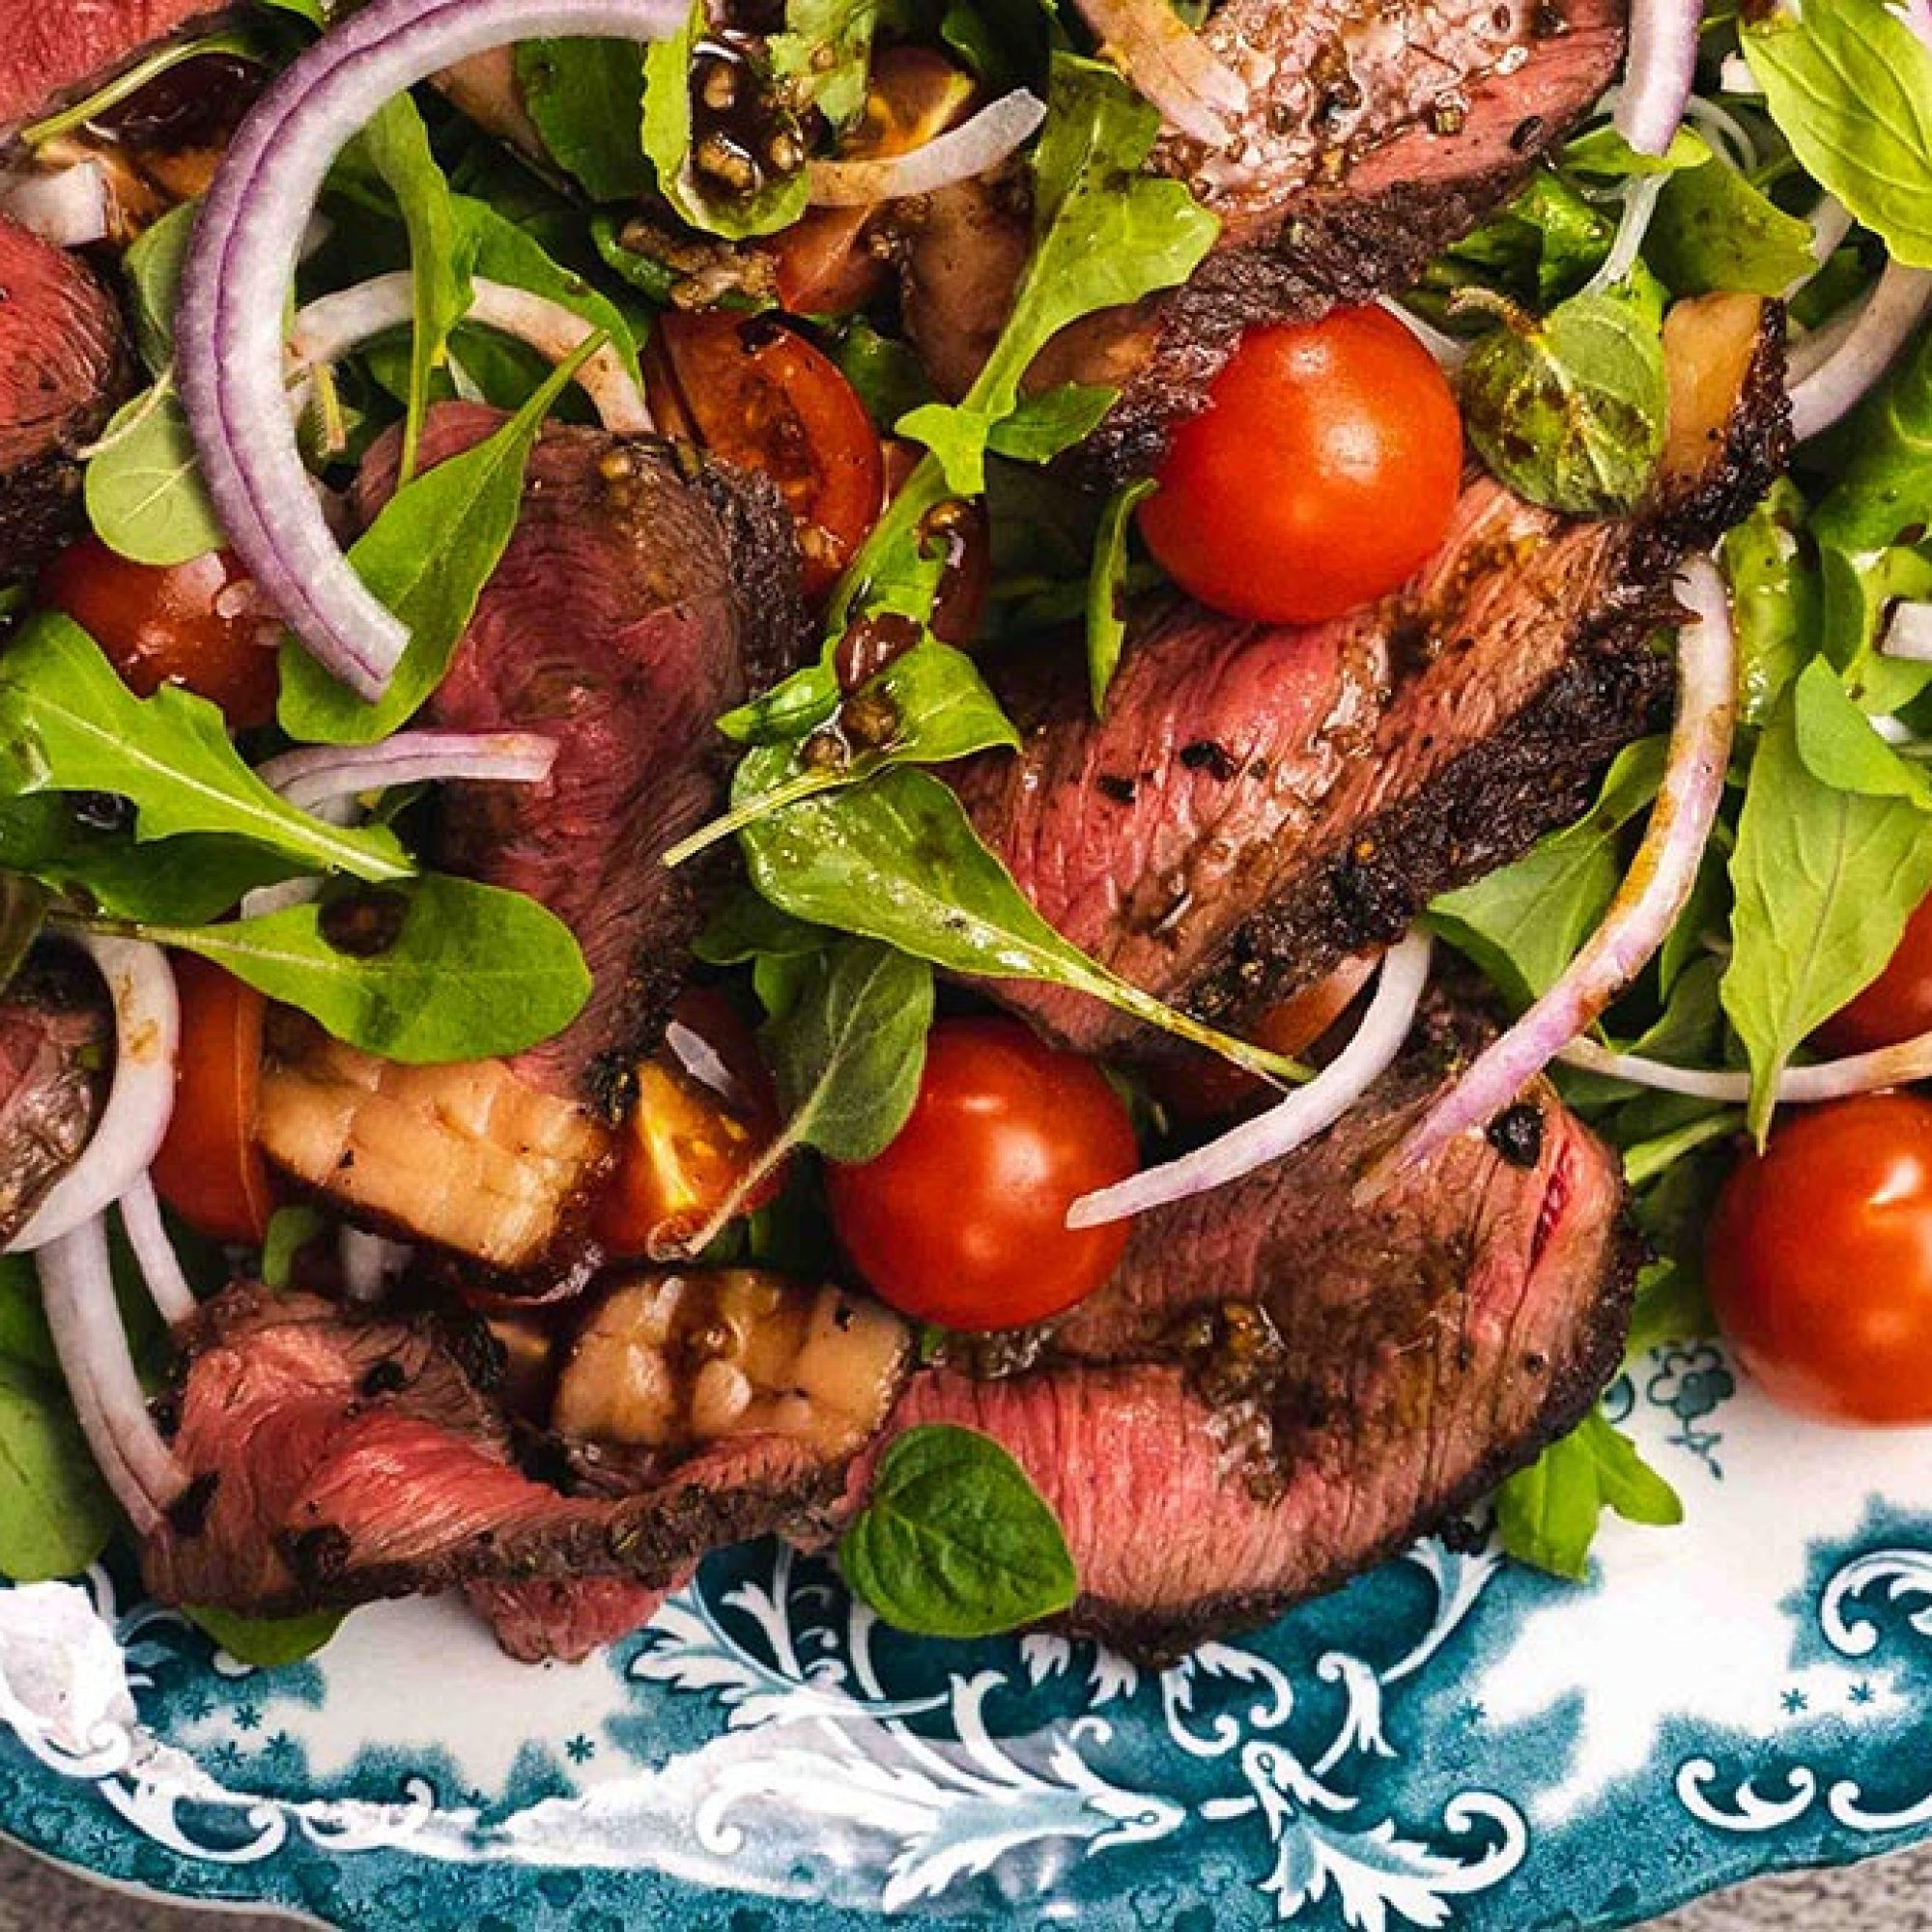 Beef steak tagliata with rocket salad recipe